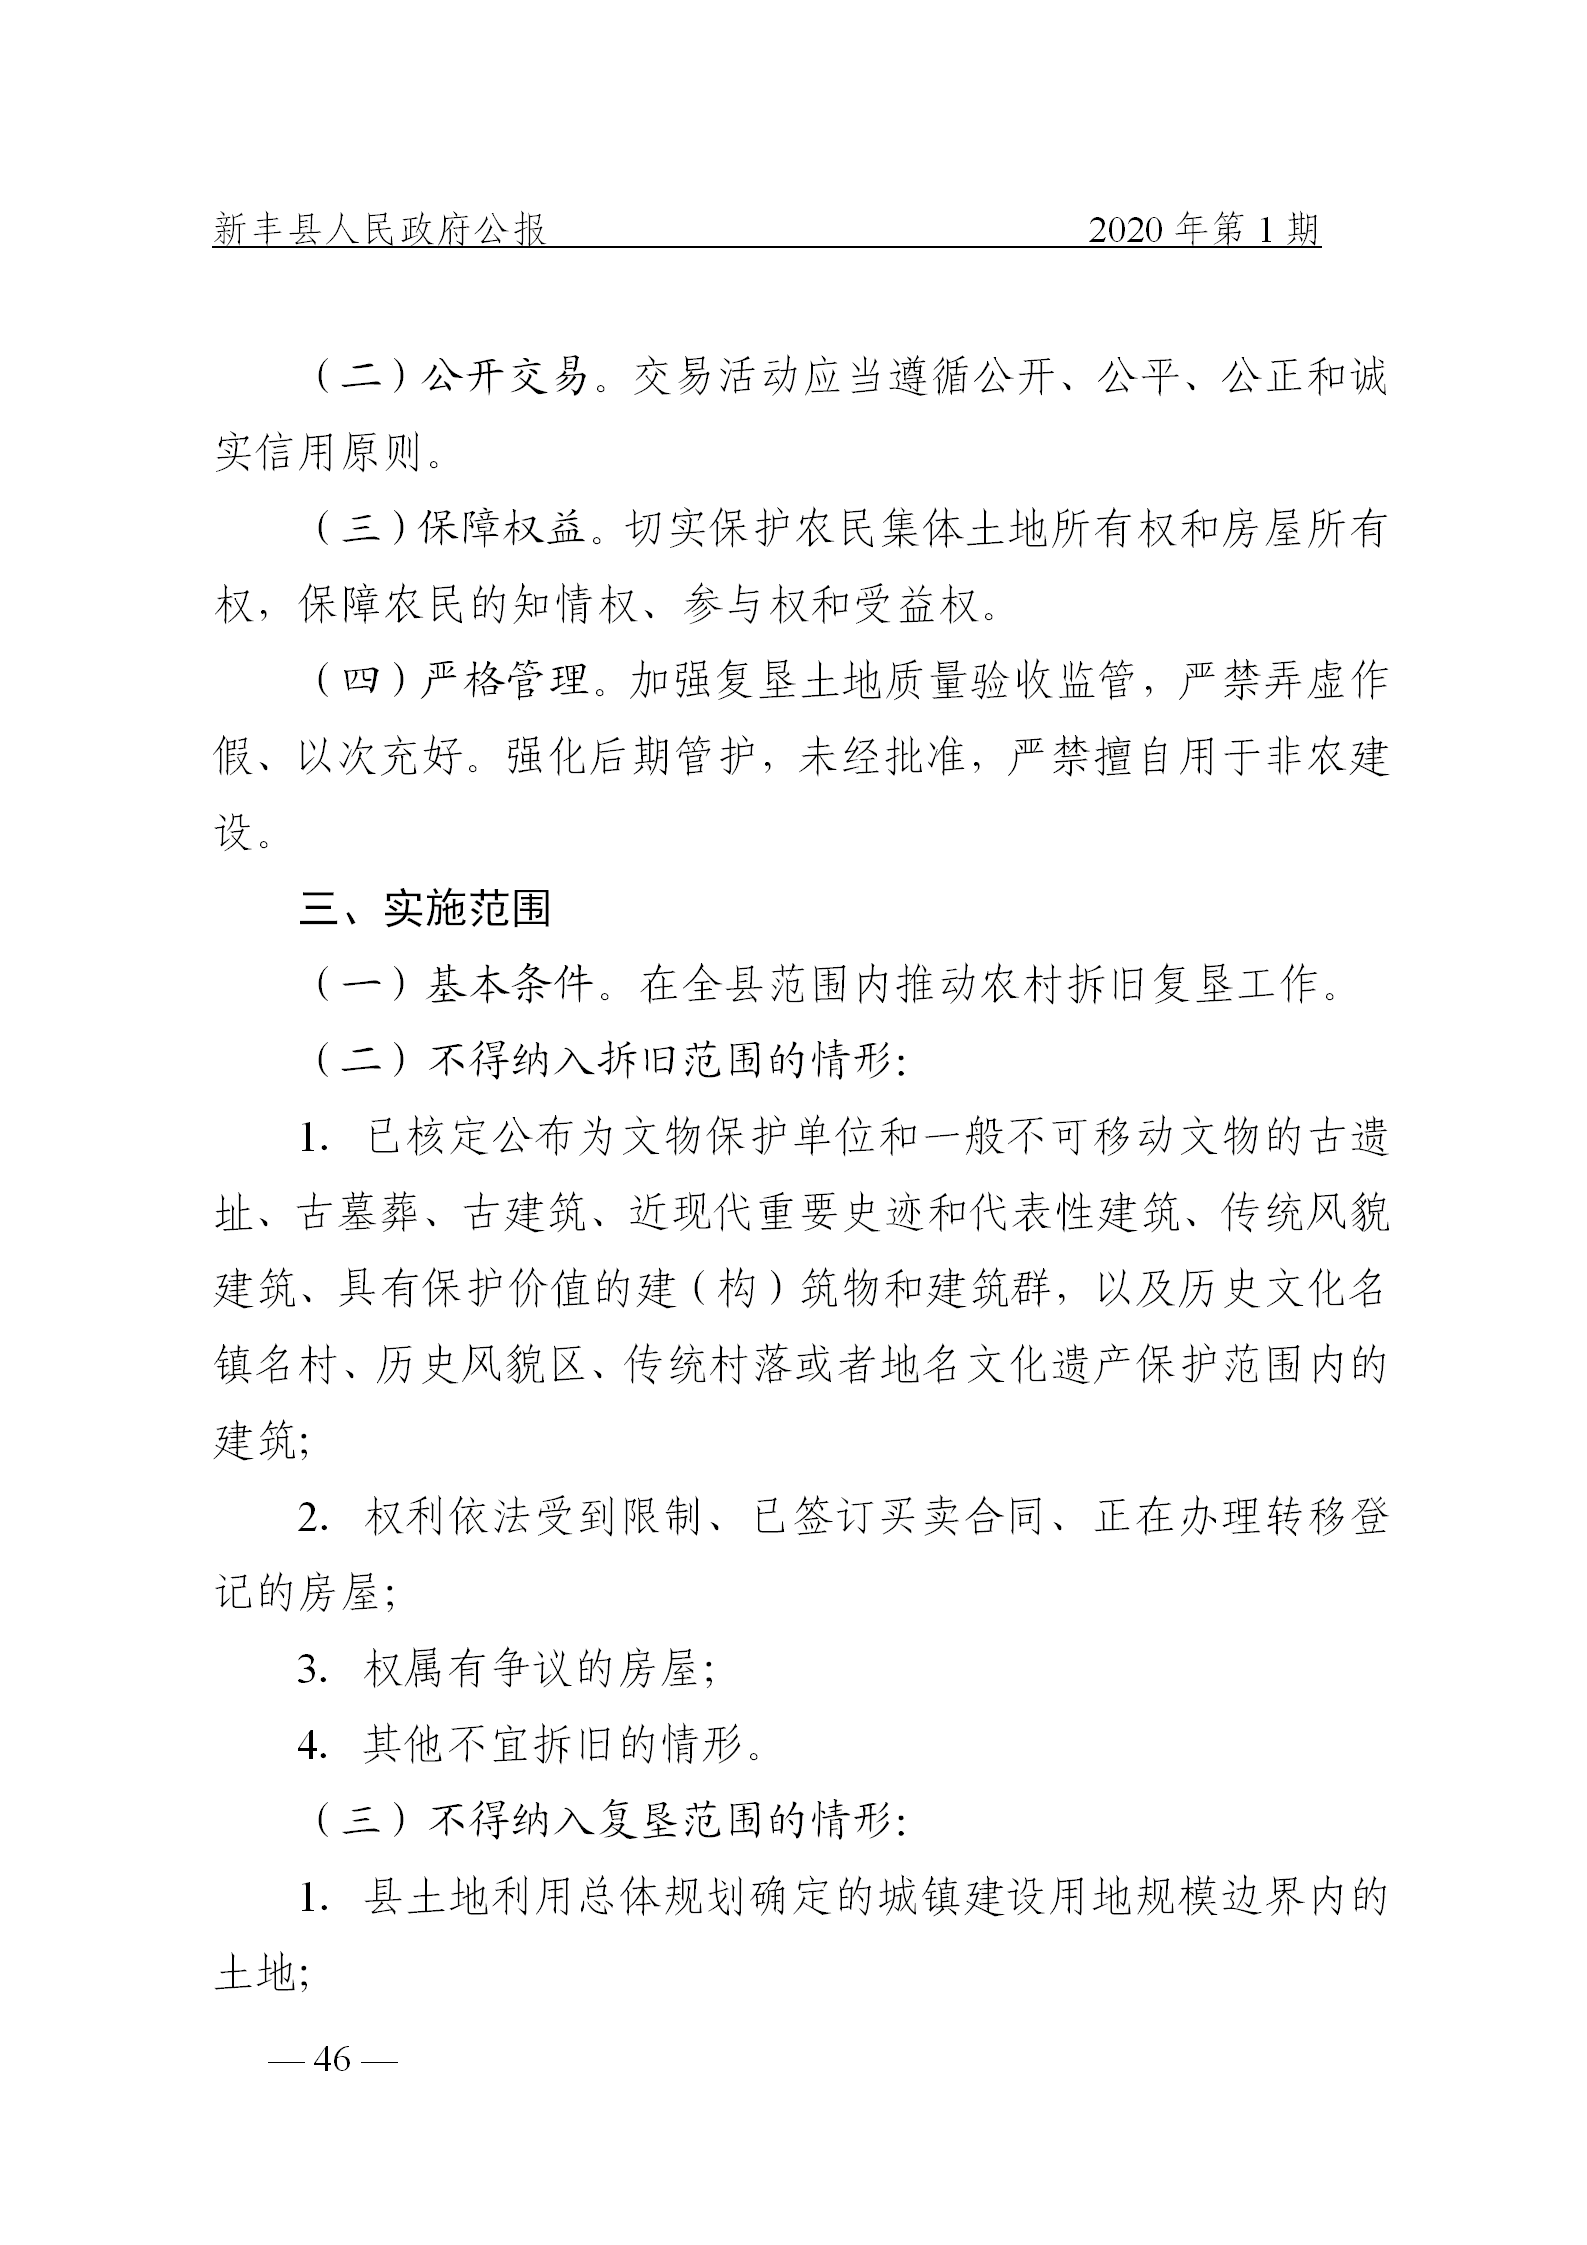 《新丰县人民政府公报》2020年第1期(1)_46.png